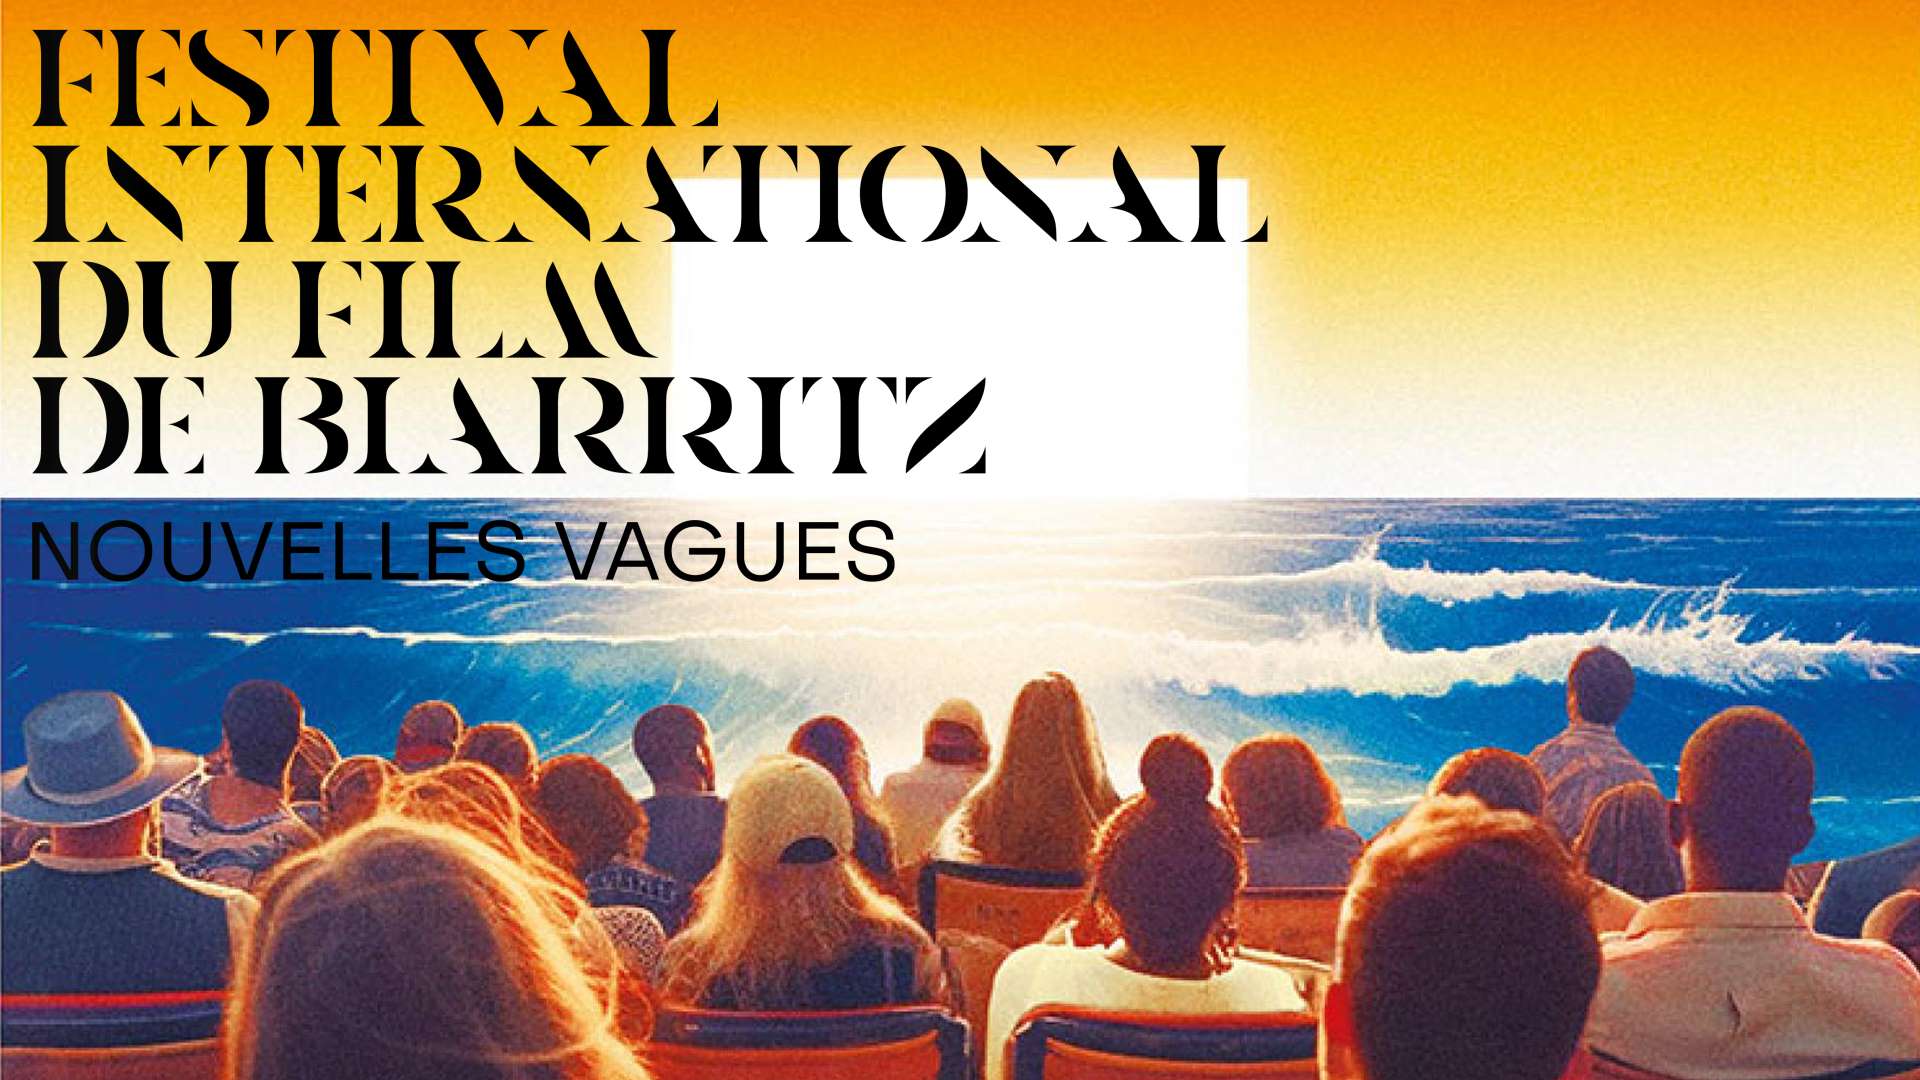 Le Biarritz Film Festival - Nouvelles Vagues